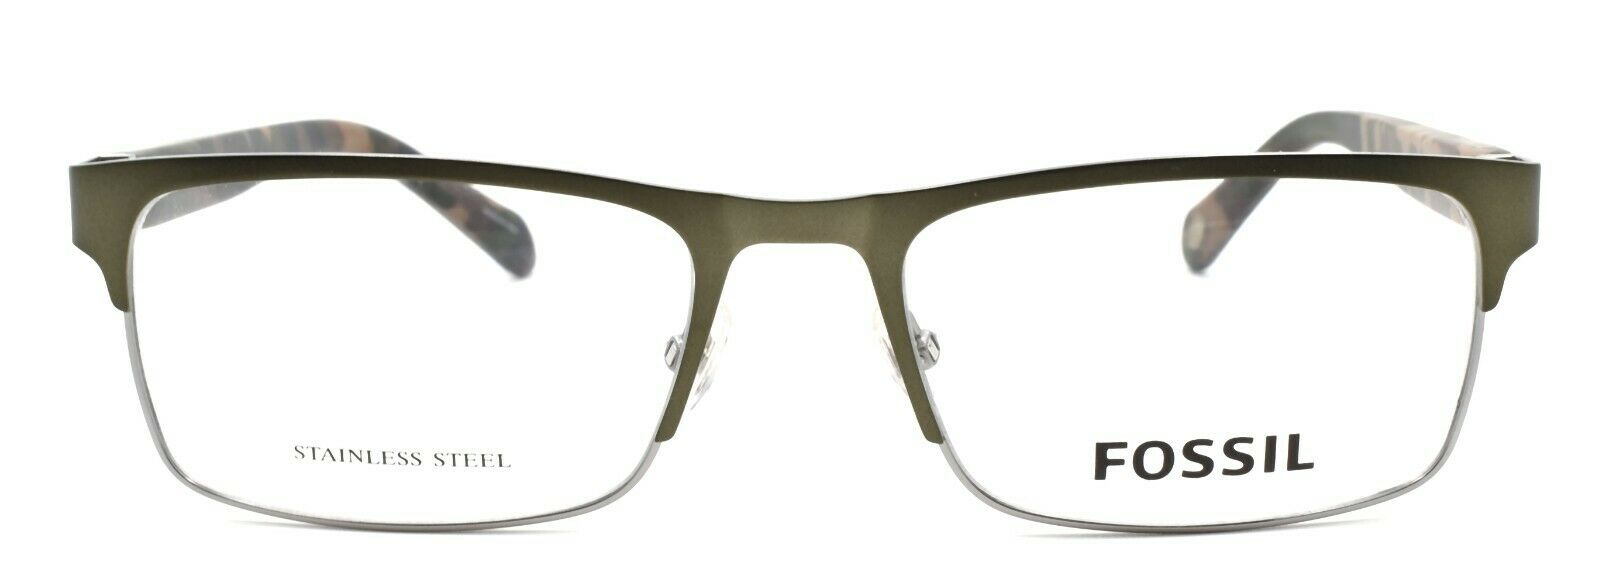 2-Fossil FOS 7036 4C3 Men's Eyeglasses Frames 55-18-145 Olive-716736081021-IKSpecs